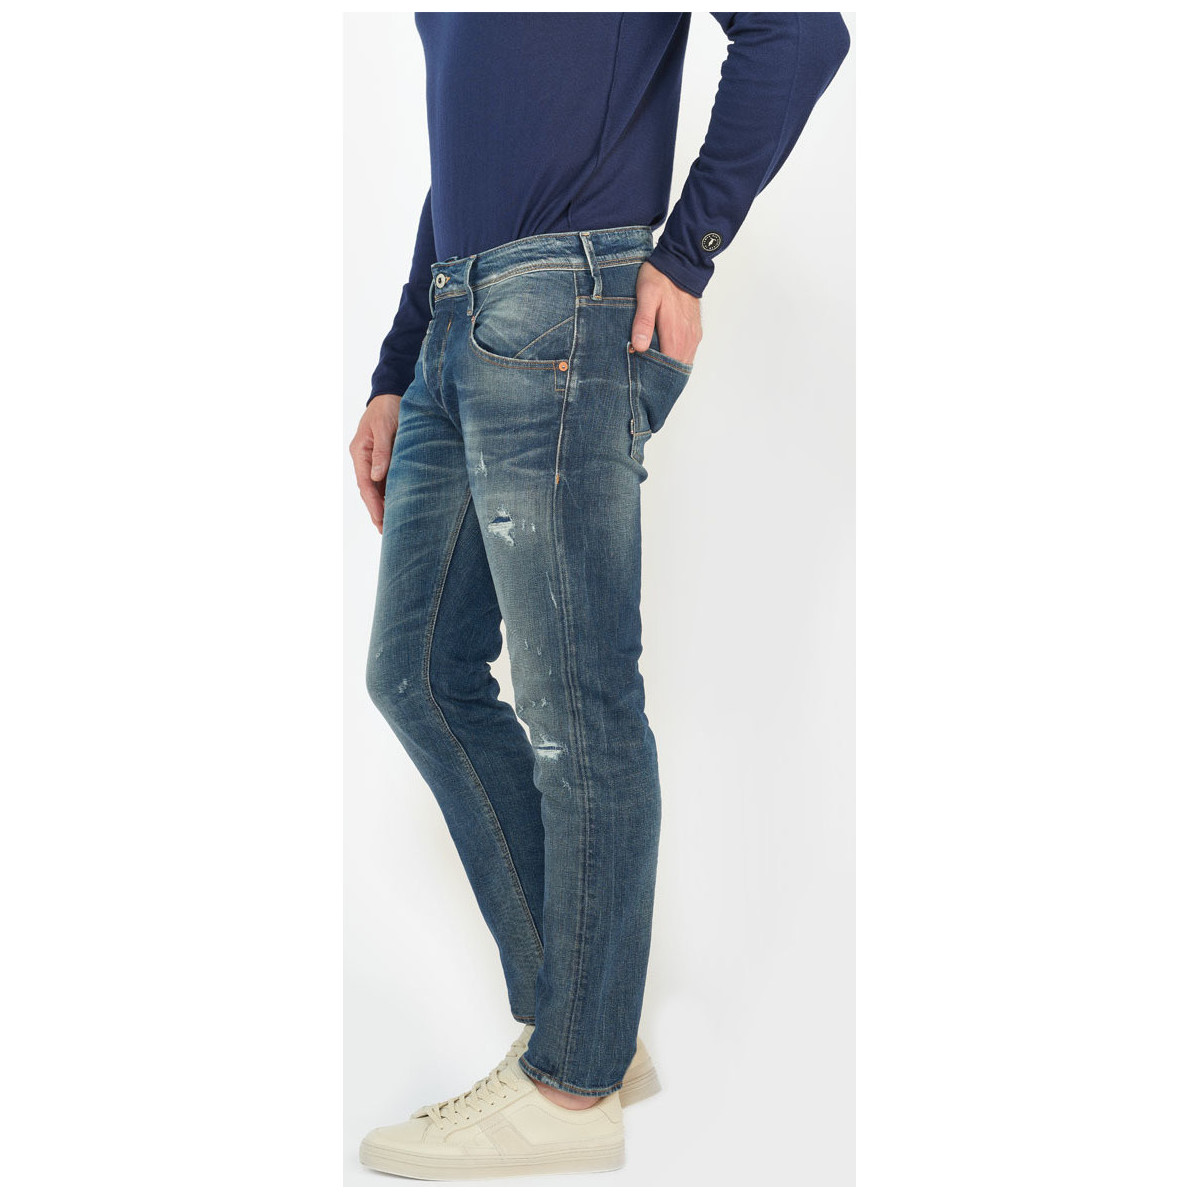 Le Temps des Cerises Bleu Niko 700/11 adjusted jeans destroy vintage bleu 2RMJCaot